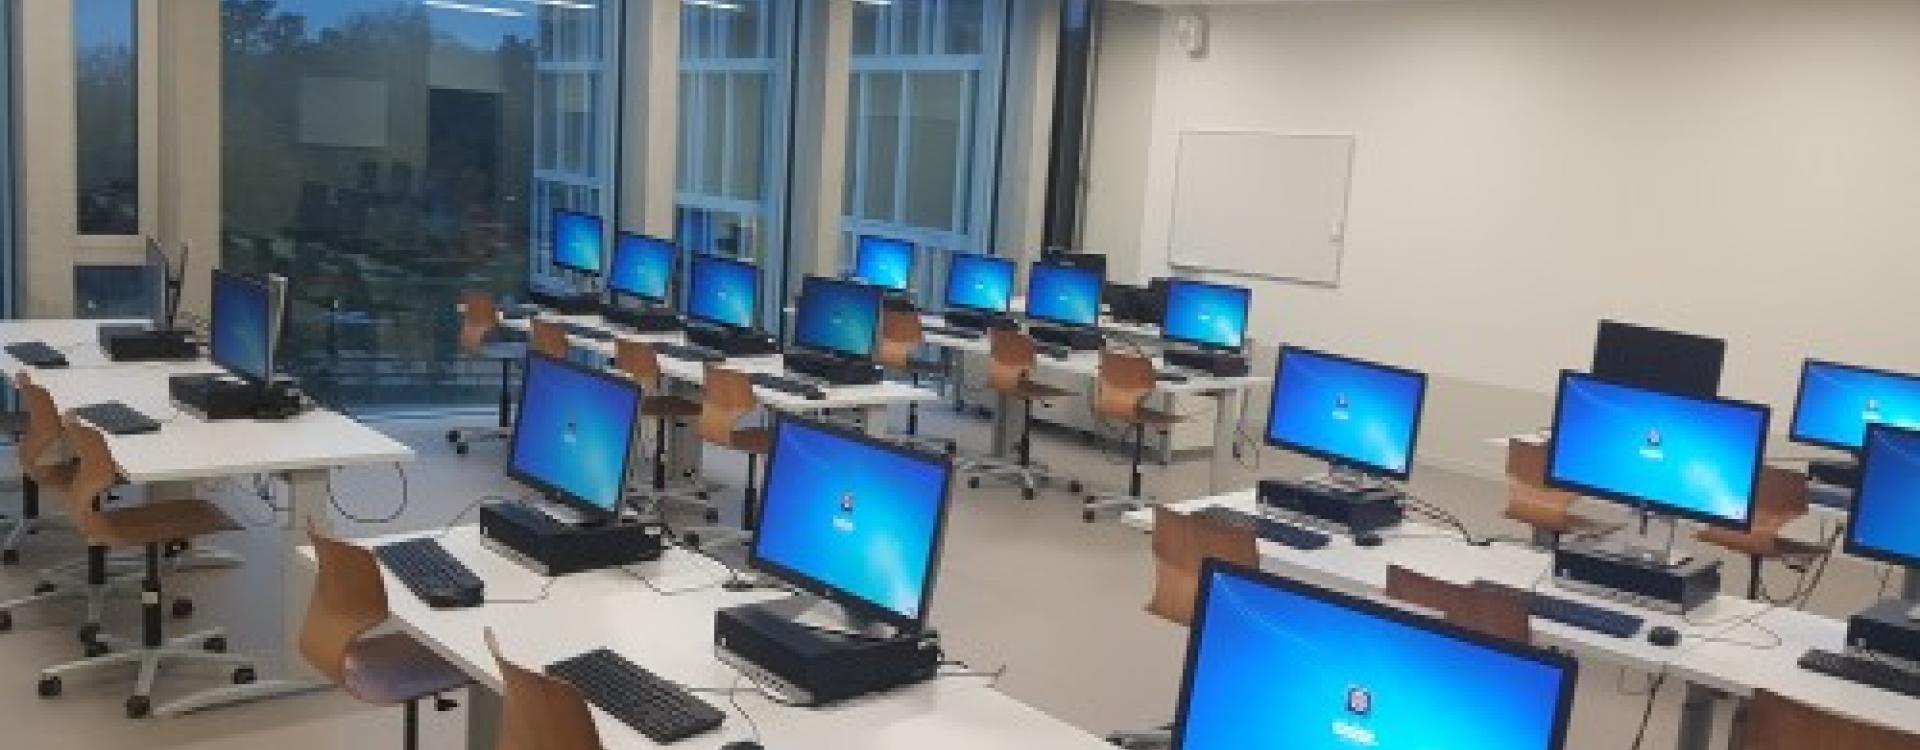 Ecole supérieure d'informatique de gestion (ESIG) / Ecole de commerce Raymond-Uldry